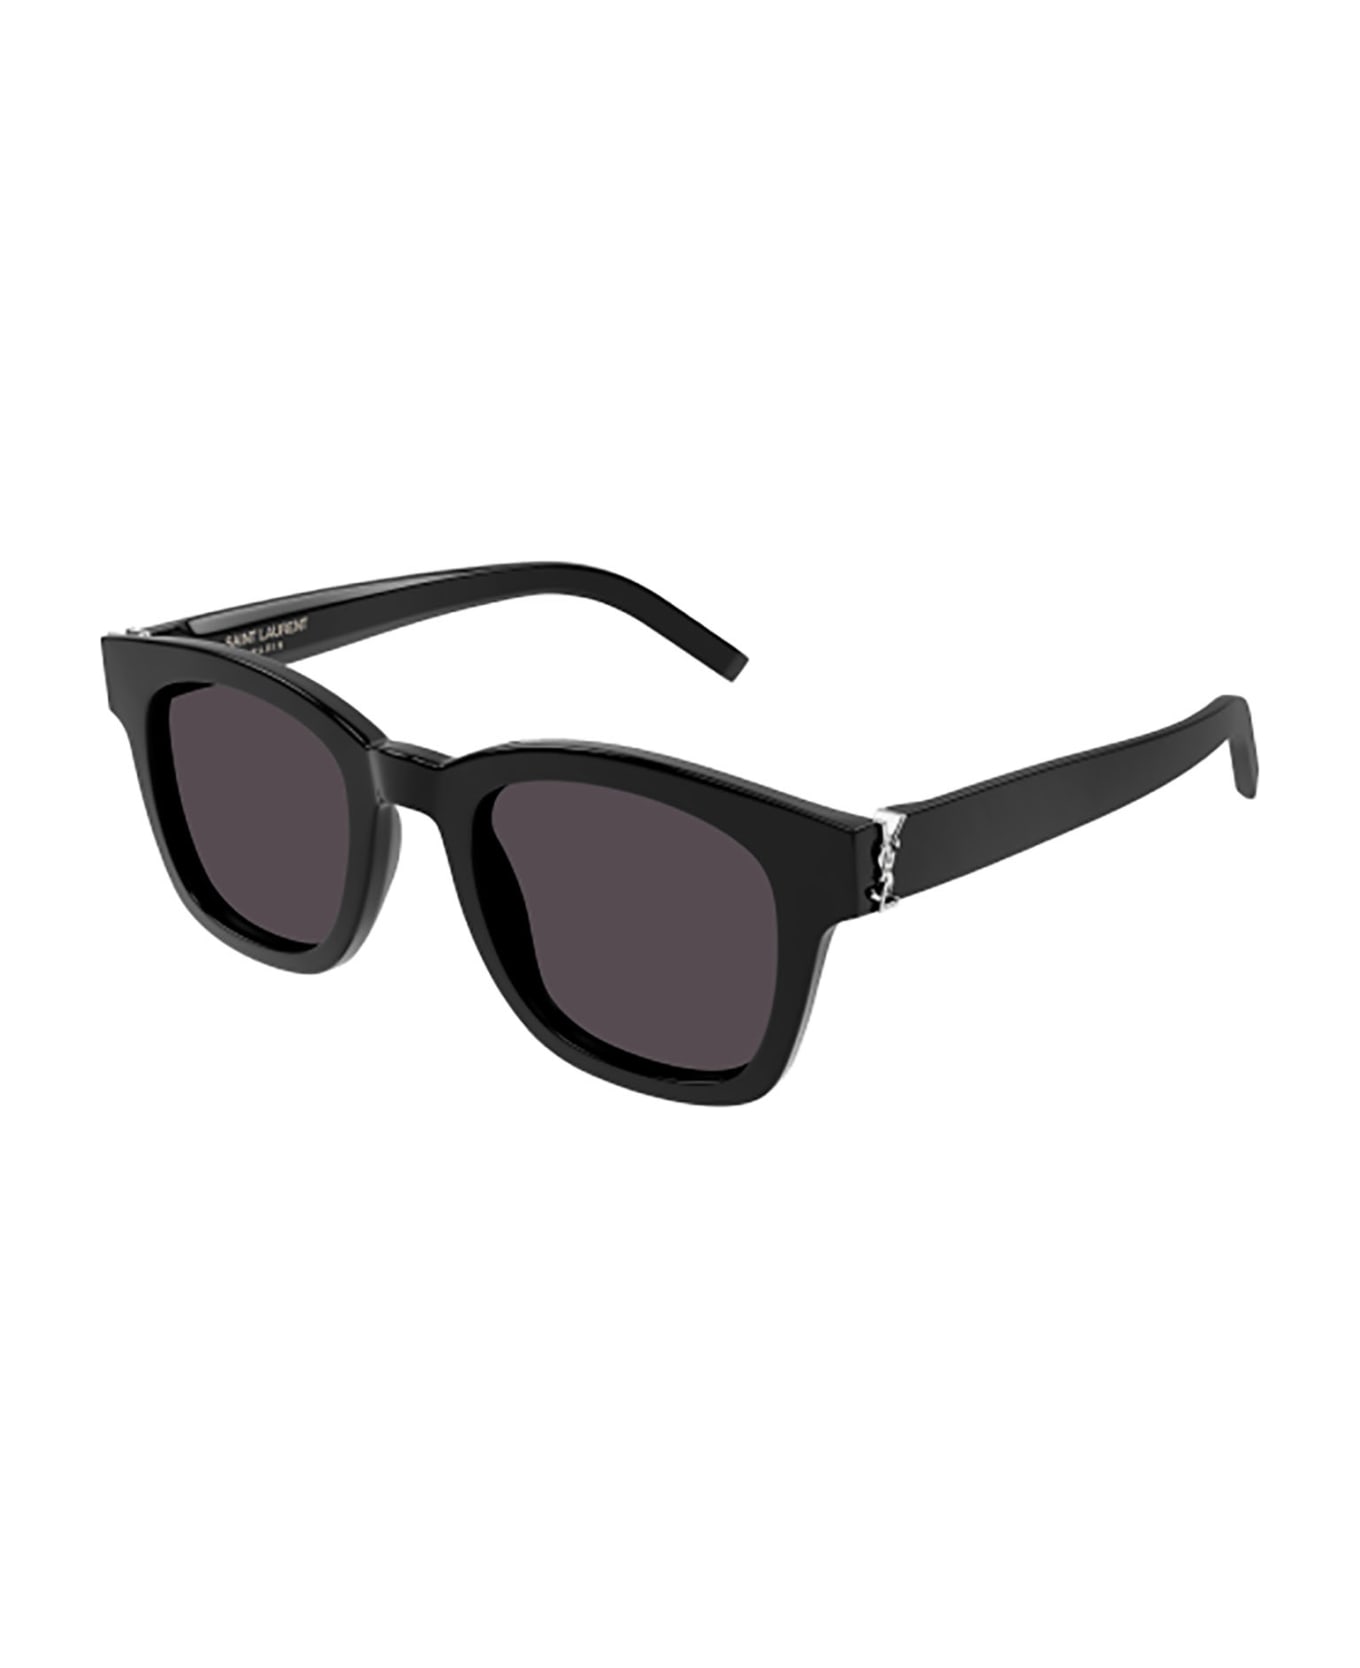 Saint Laurent Eyewear Sl M124 Sunglasses - 001 black black black